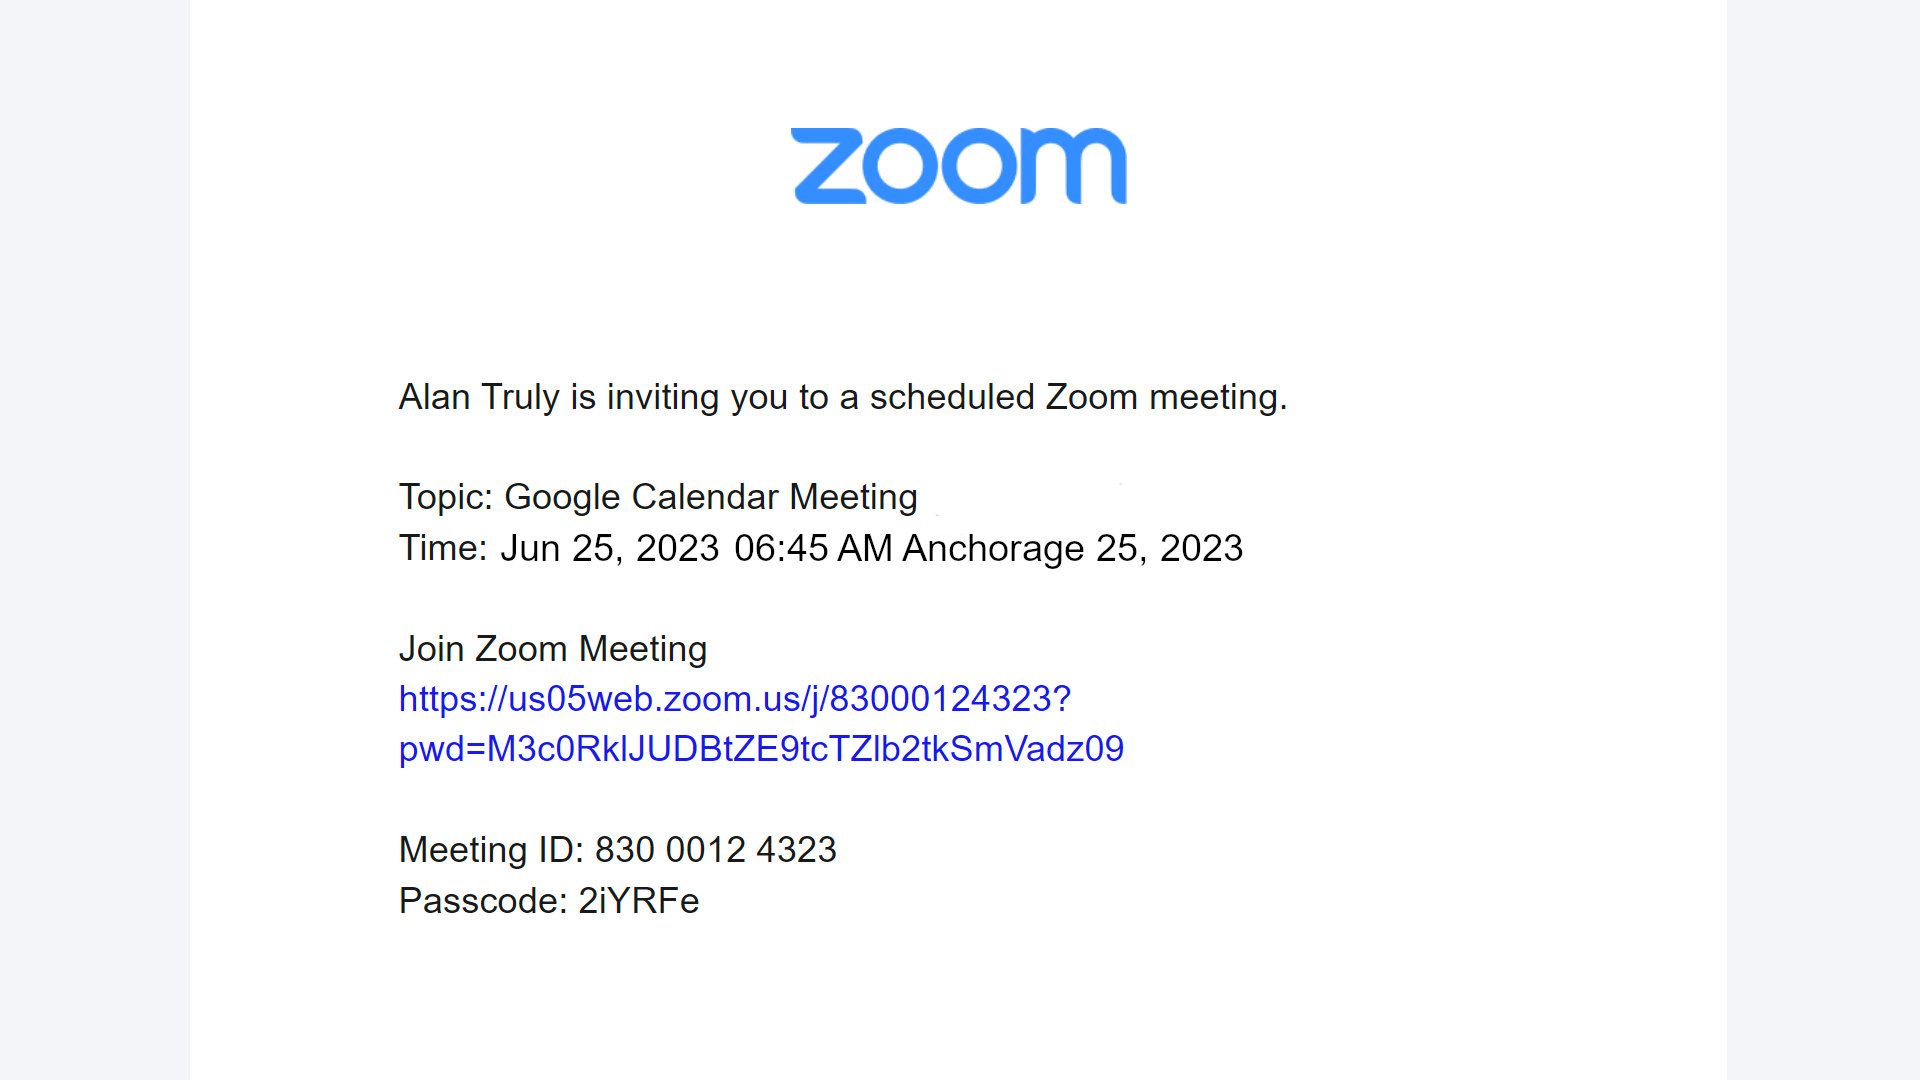 Uma janela mostra as informações da reunião, incluindo tópico, horário, link da reunião Zoom, ID da reunião e senha.  Selecione qualquer um ou todo o texto para colar em um e-mail.